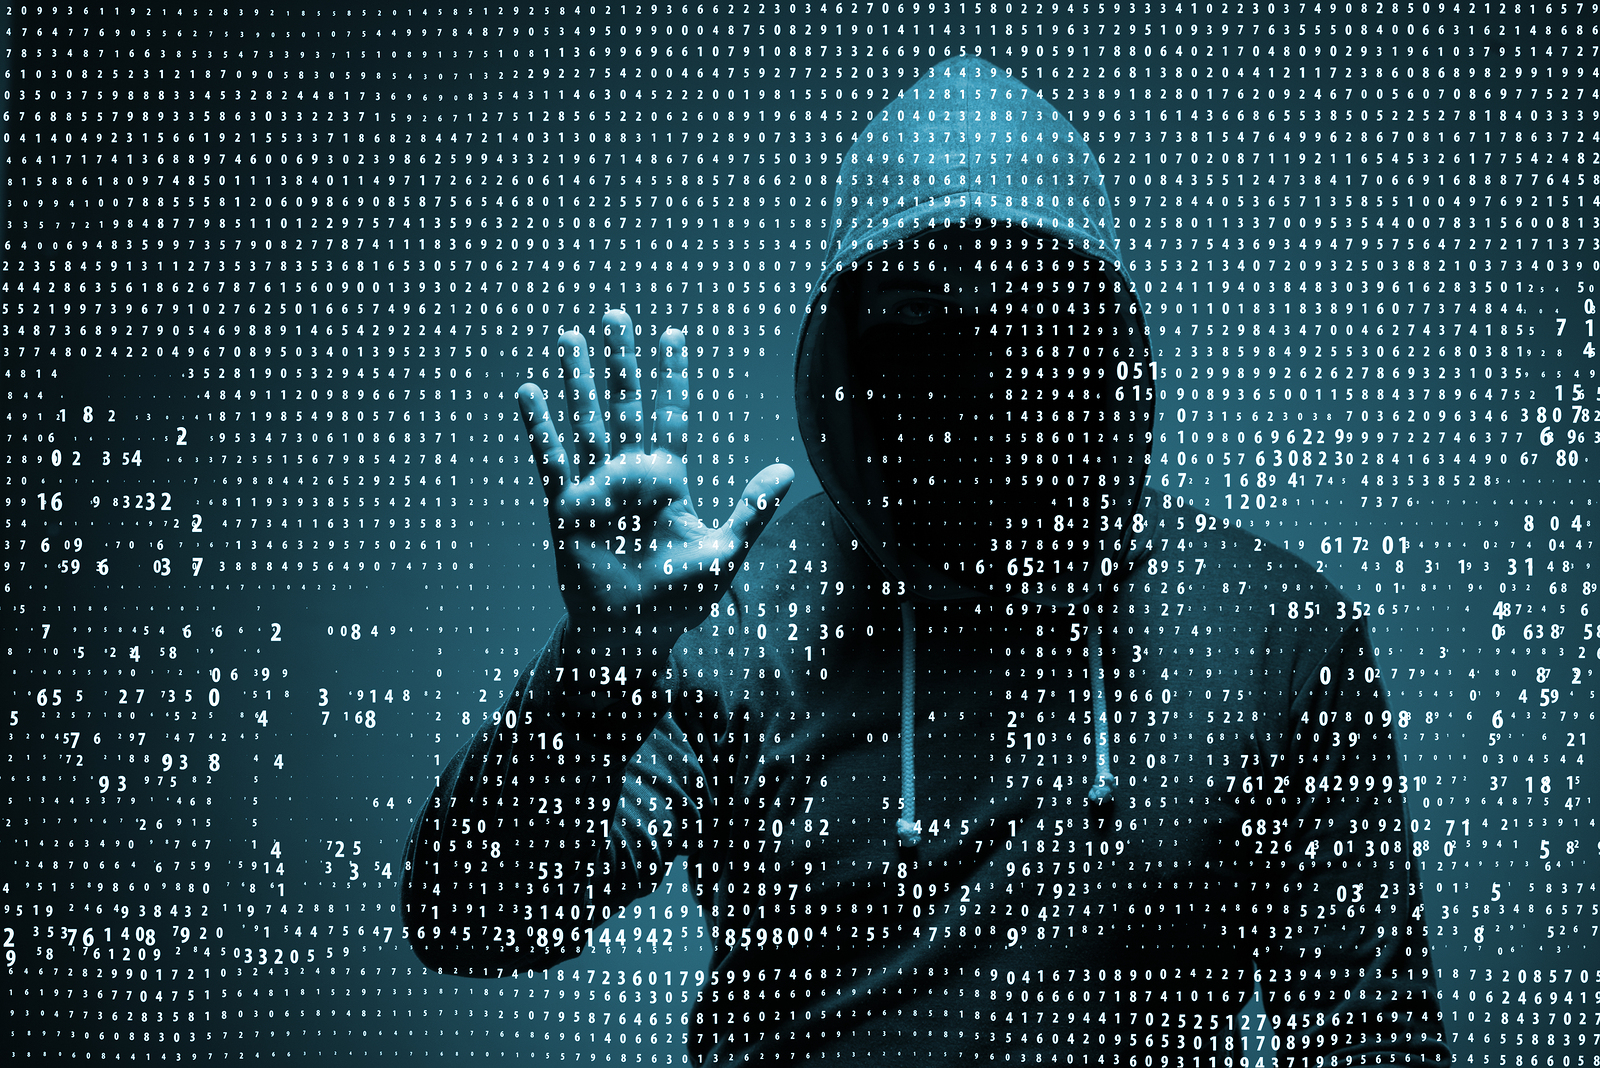 Cybersecurity: ecco i consigli di Check Point per prevenire gli attacchi thumbnail